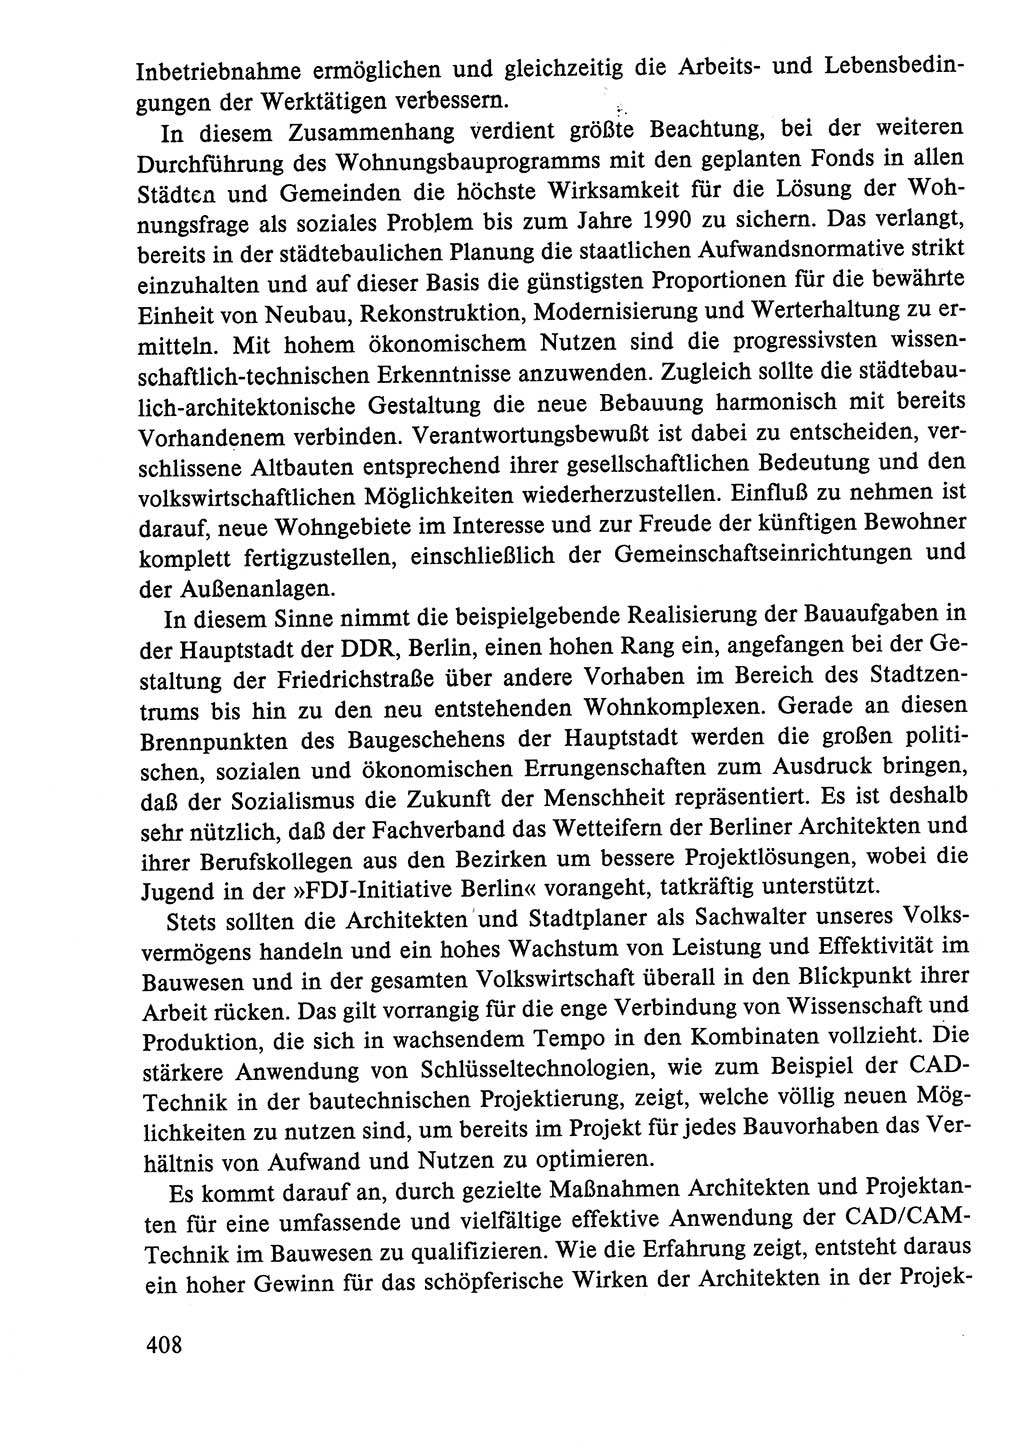 Dokumente der Sozialistischen Einheitspartei Deutschlands (SED) [Deutsche Demokratische Republik (DDR)] 1986-1987, Seite 408 (Dok. SED DDR 1986-1987, S. 408)